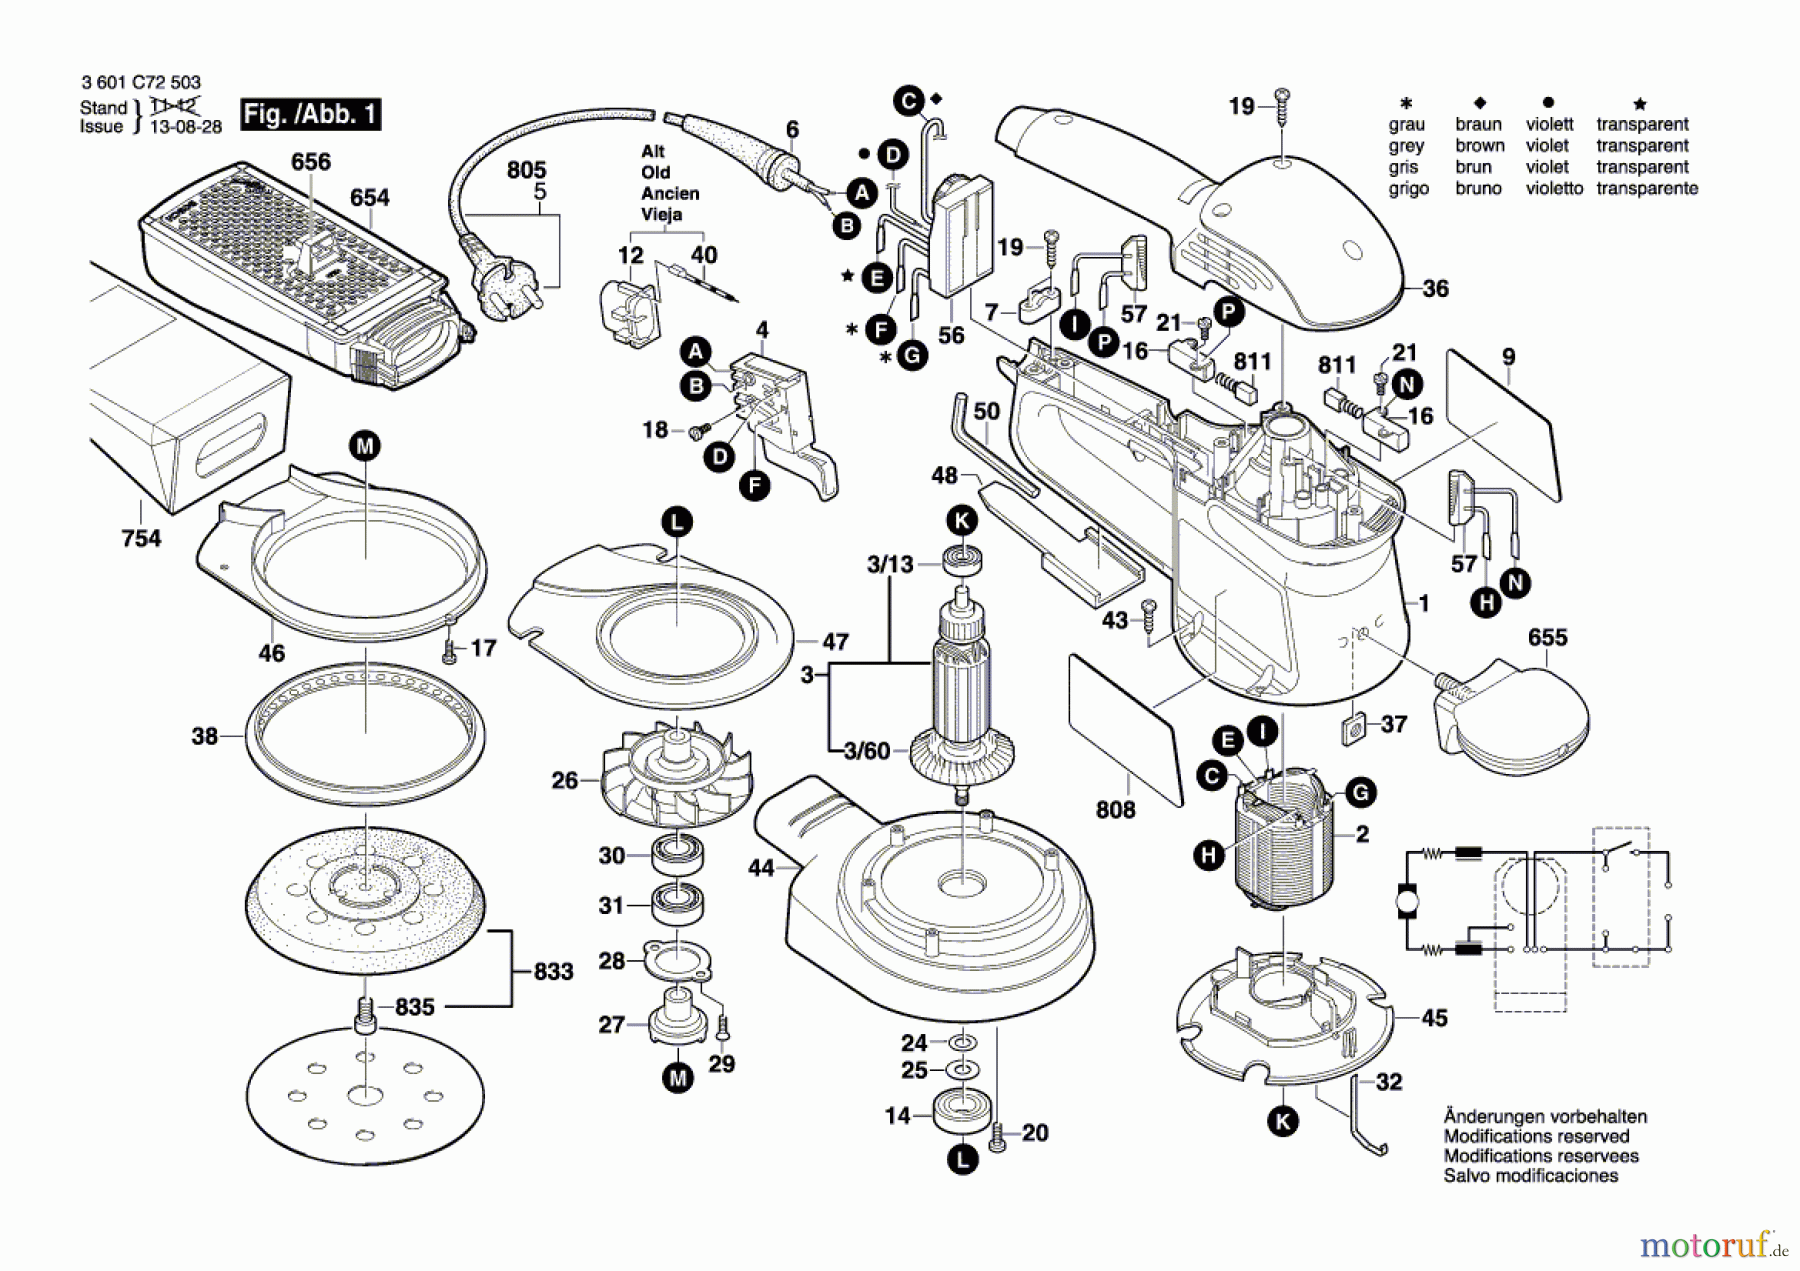  Bosch Werkzeug Exzenterschleifer GEX 125 AC Seite 1